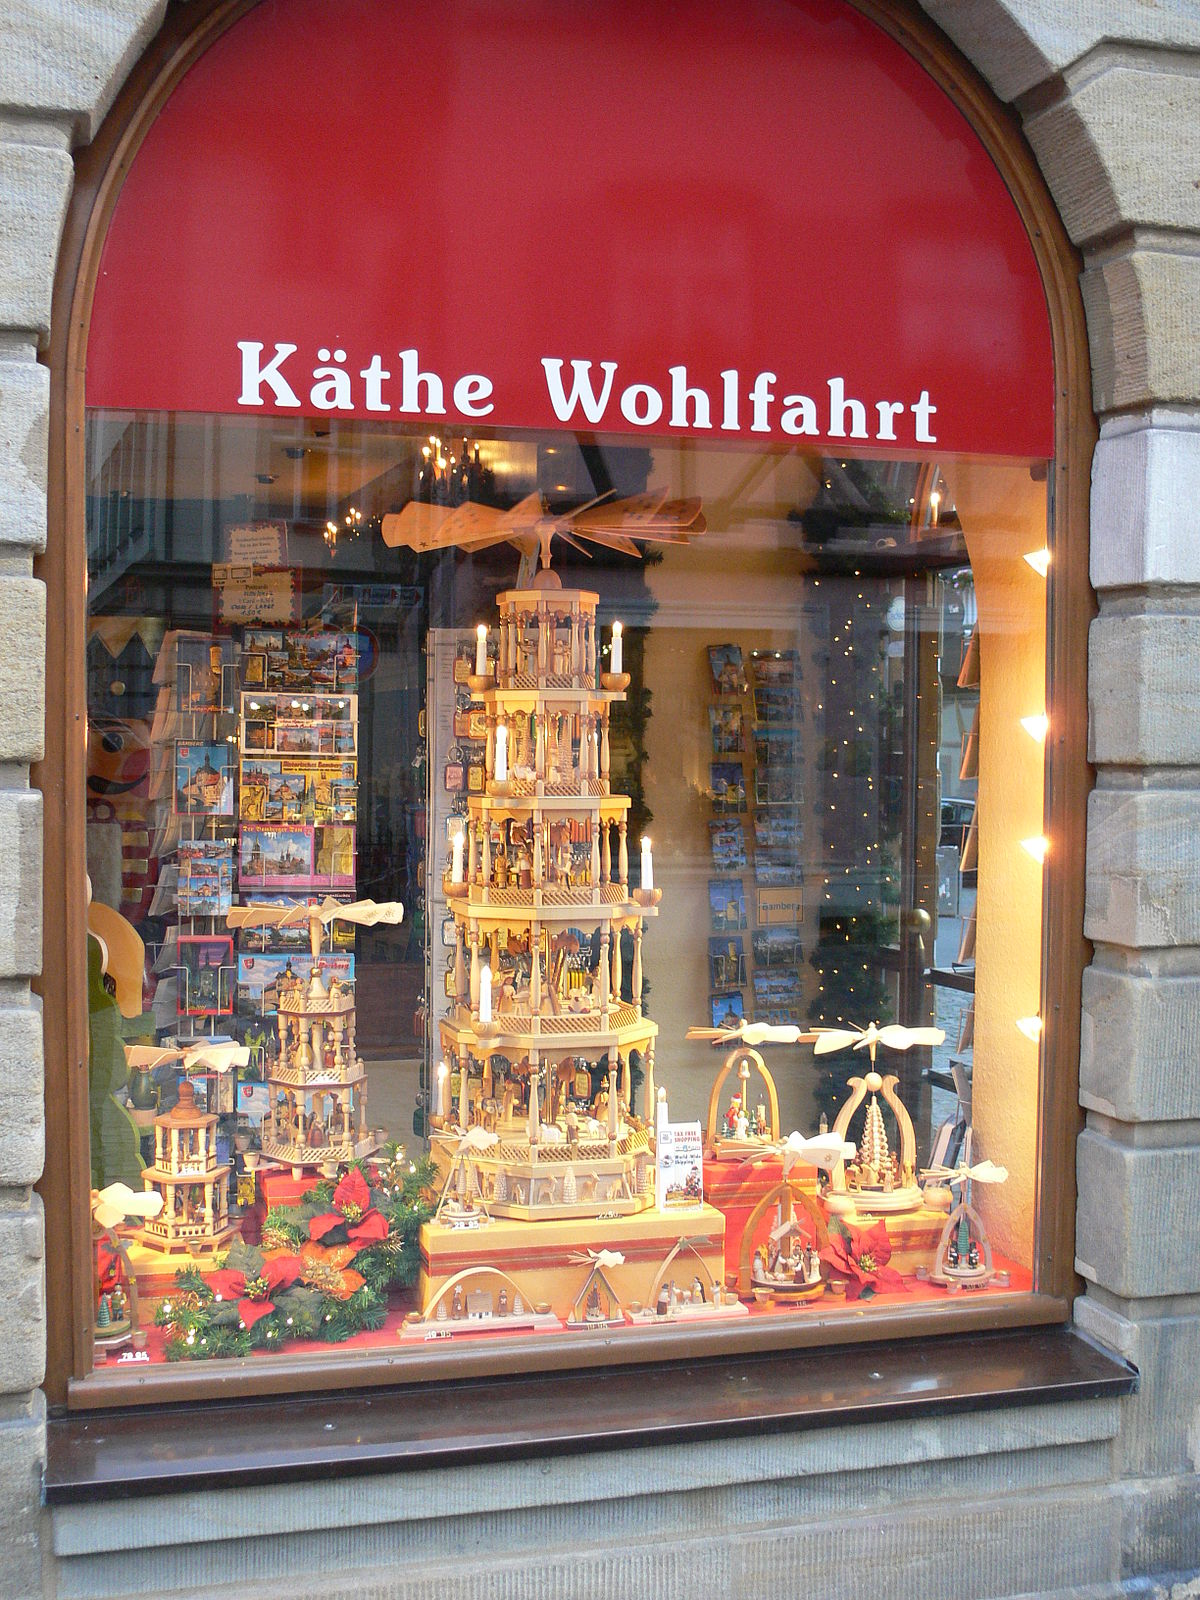 Käthe Wohlfahrt - Wikipedia